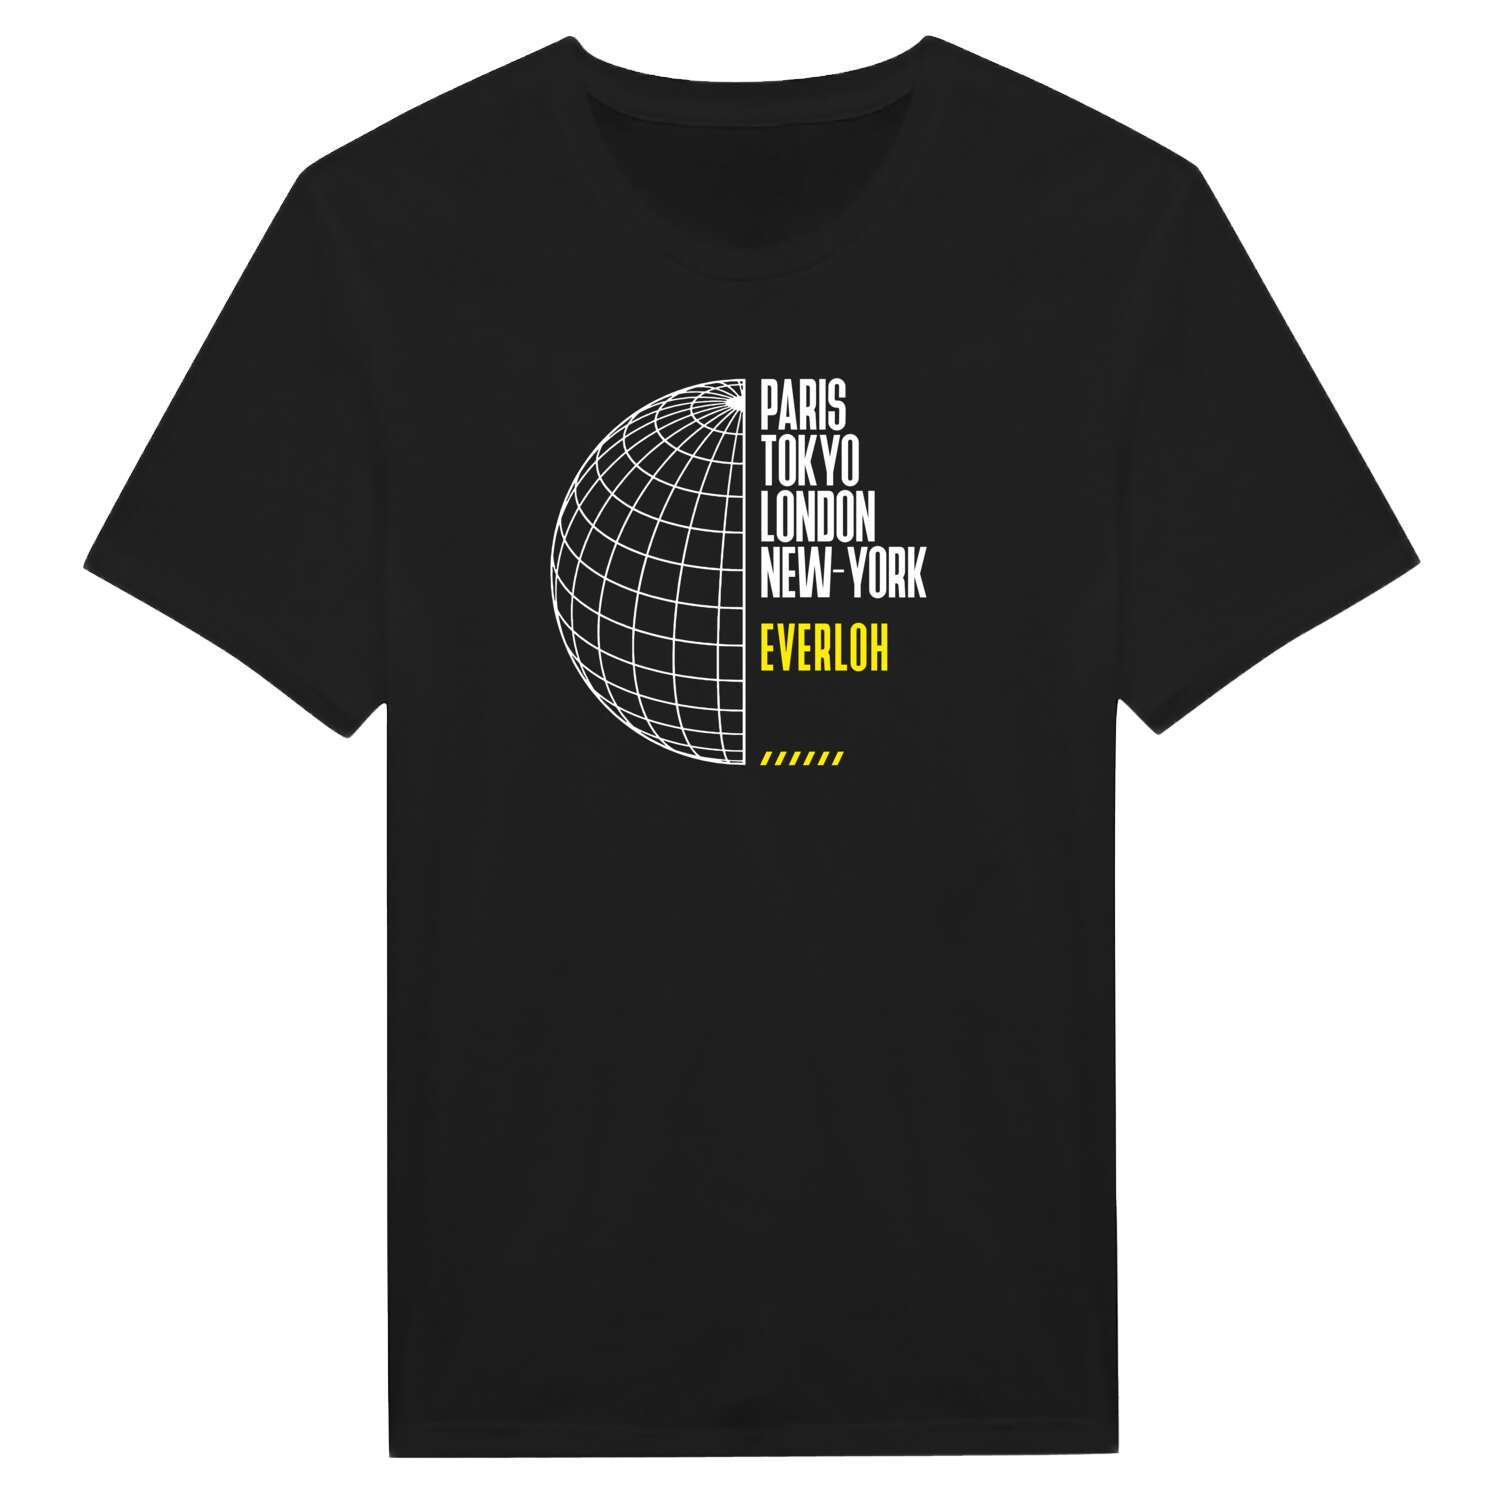 Everloh T-Shirt »Paris Tokyo London«